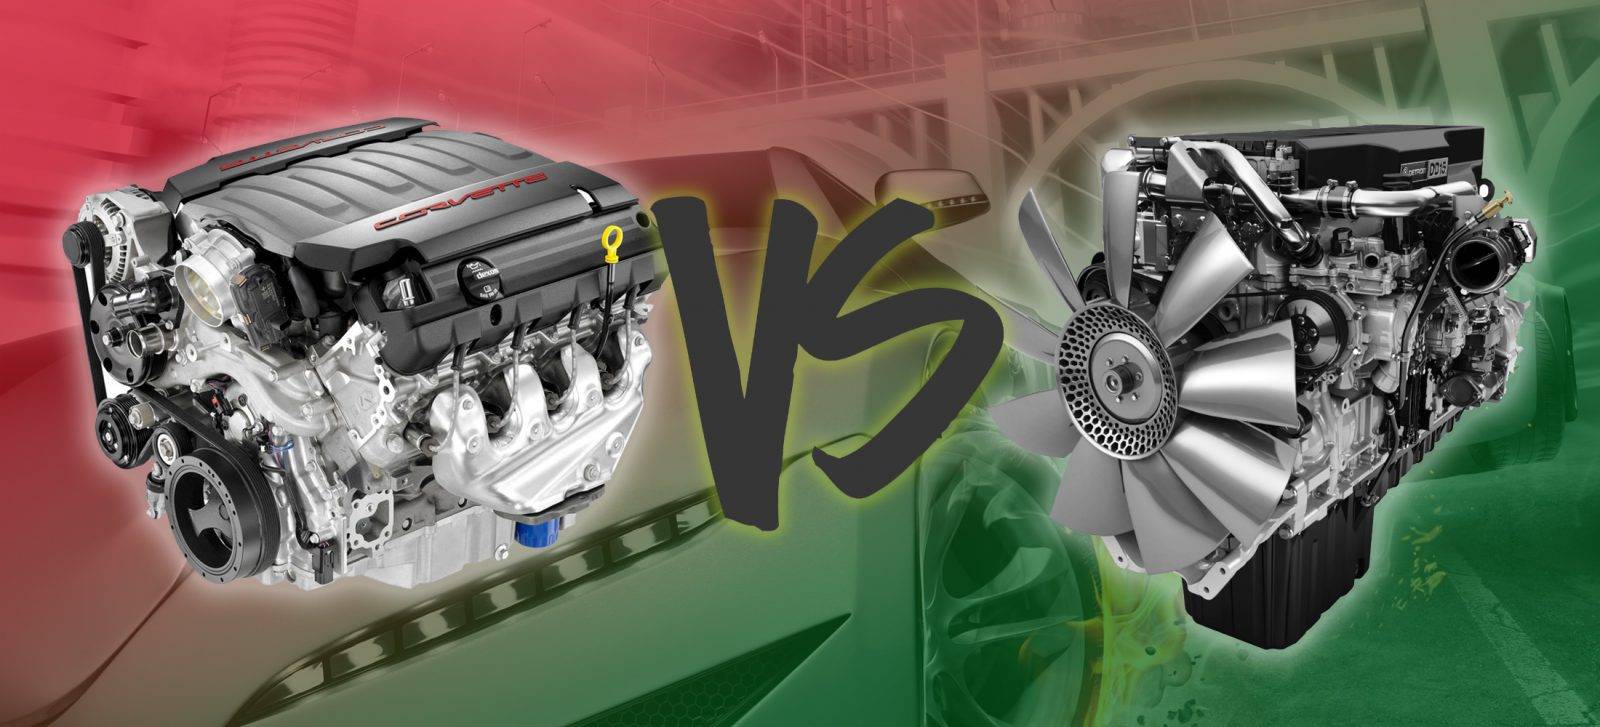 Какой двигатель лучше выбрать — дизельный или бензиновый